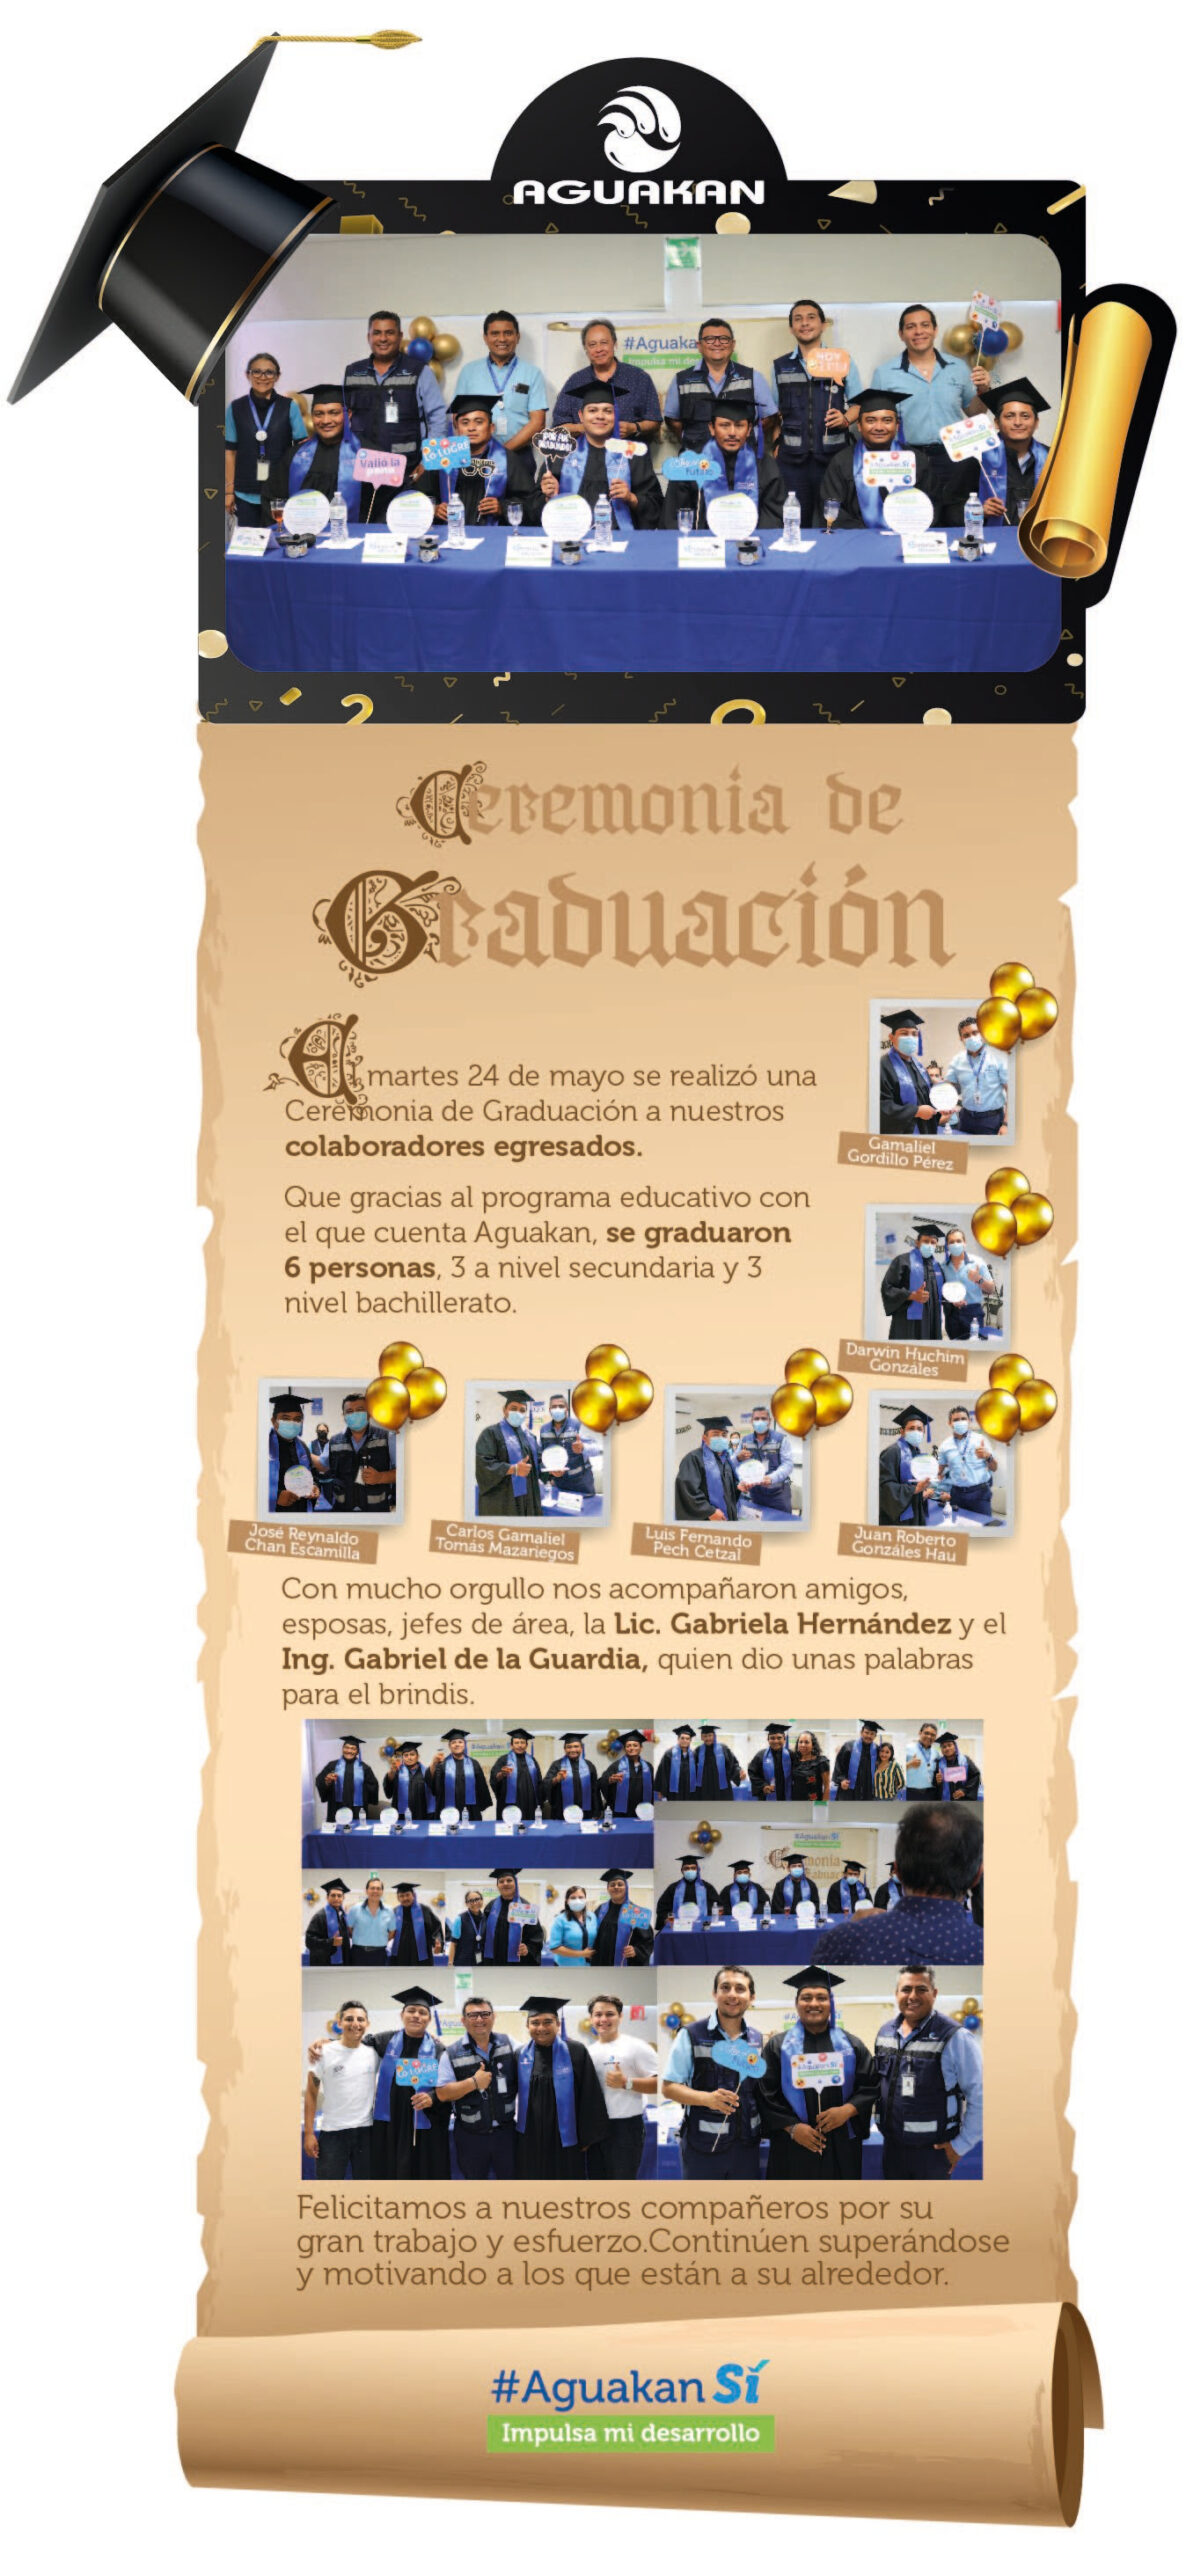 ¡Increíble Graduación! 👨‍🎓: #AguakanSí Impulsa Mi Desarrollo